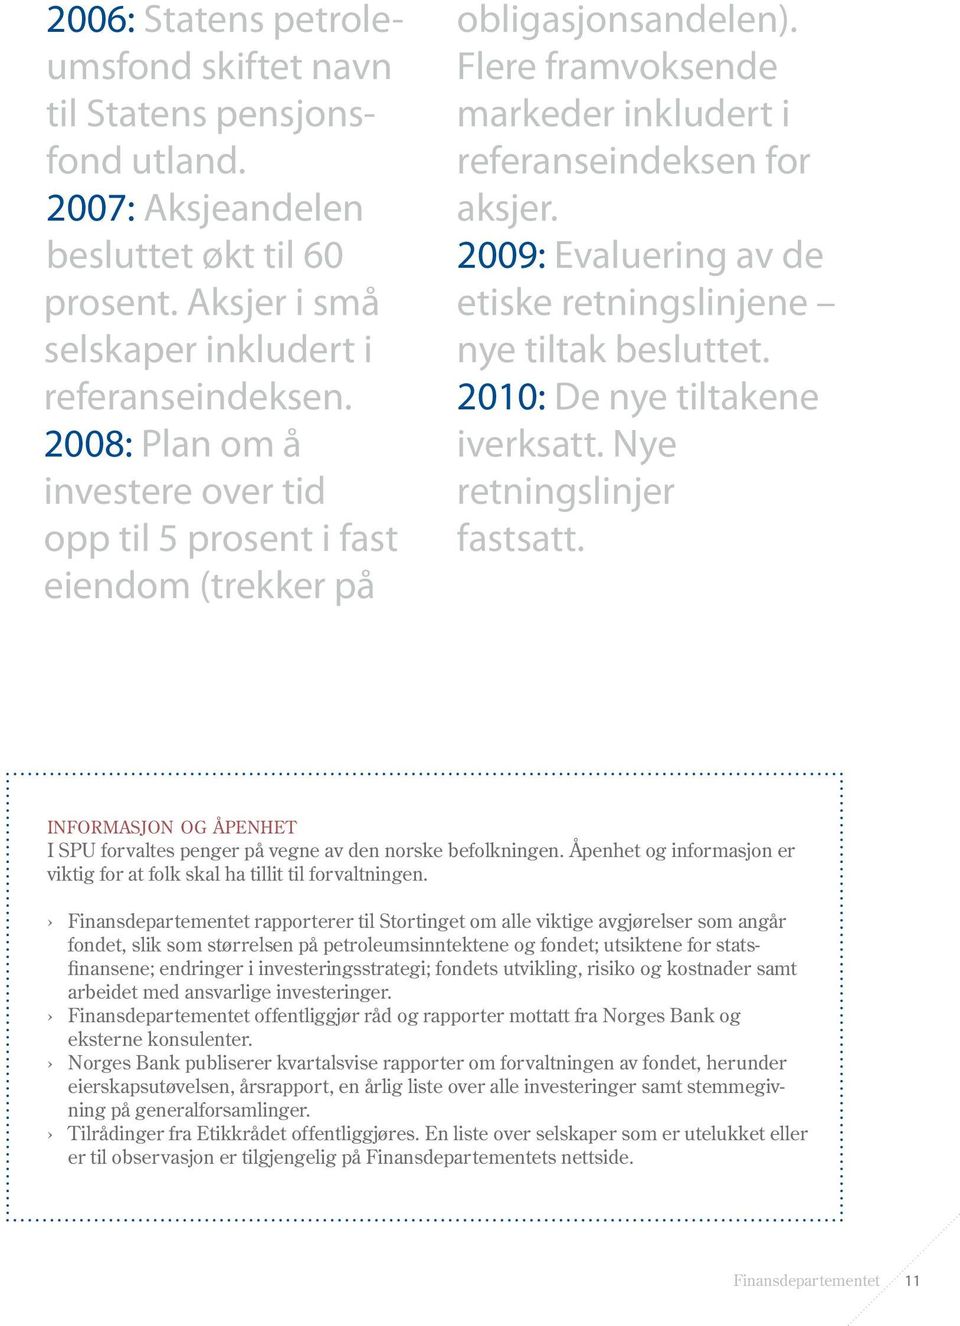 2009: Evaluering av de etiske retningslinjene nye tiltak besluttet. 2010: De nye tiltakene iverksatt. Nye retningslinjer fastsatt.